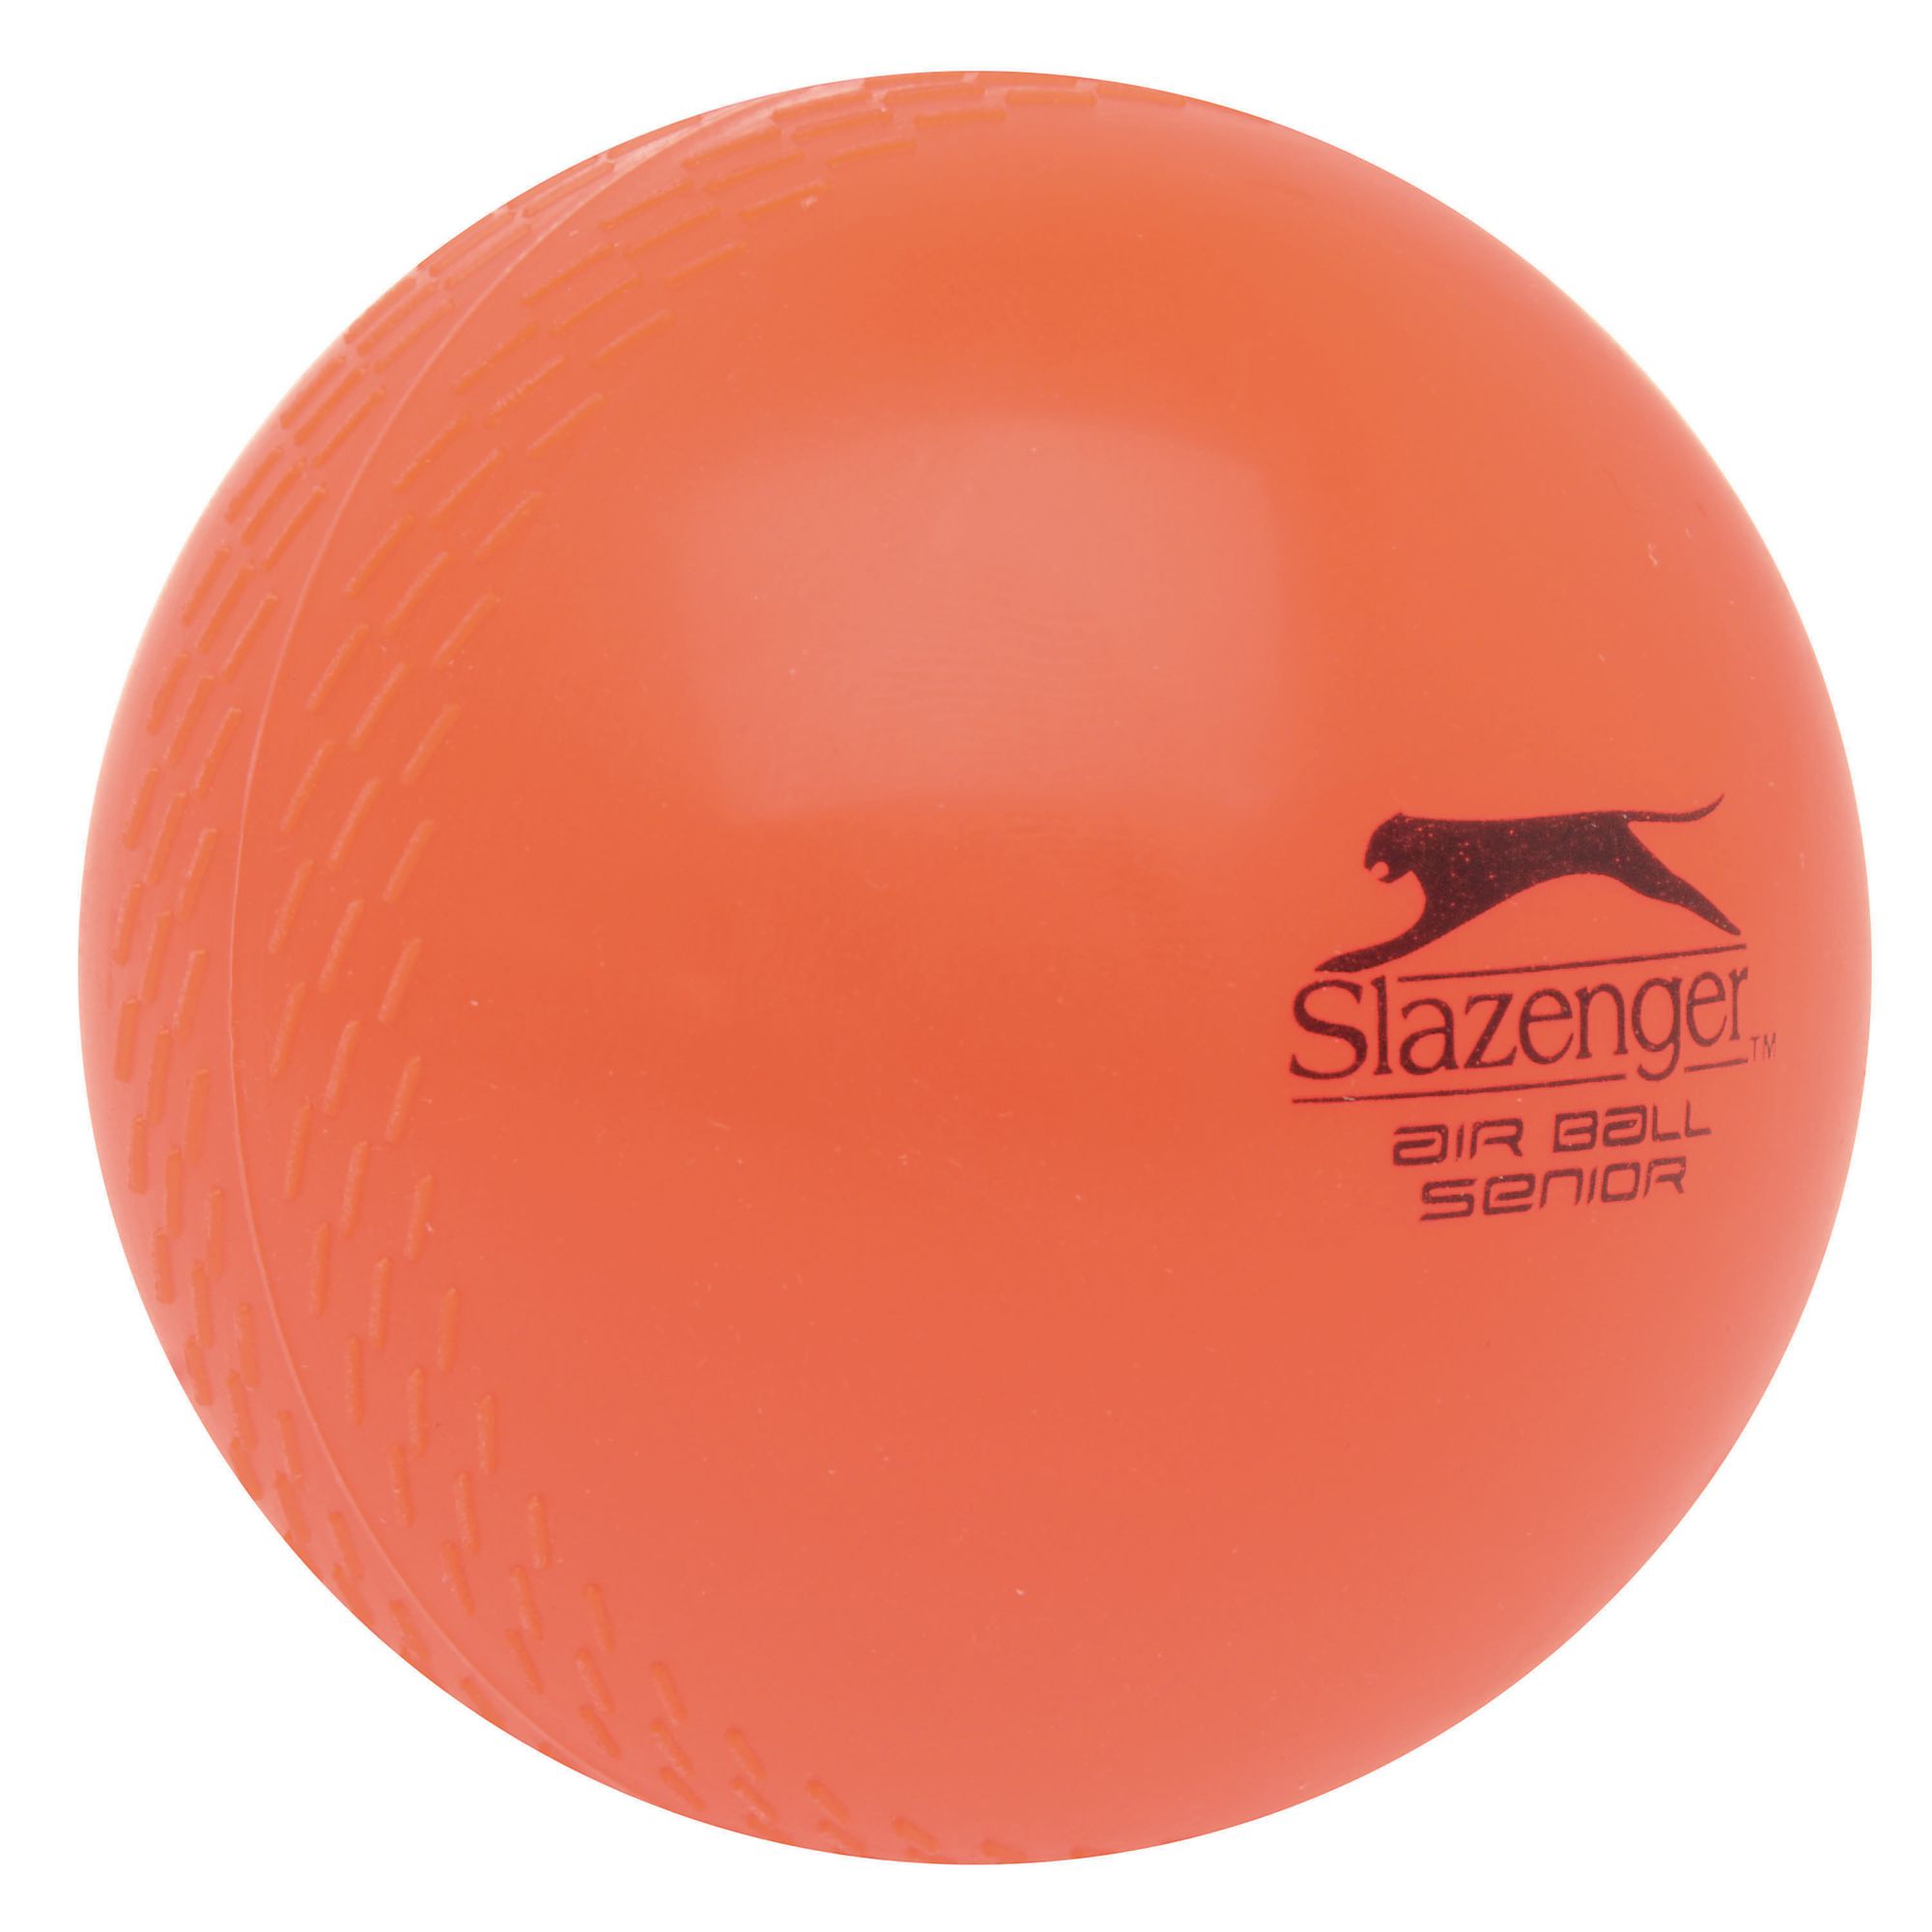 Slazenger Air Ball Pack 